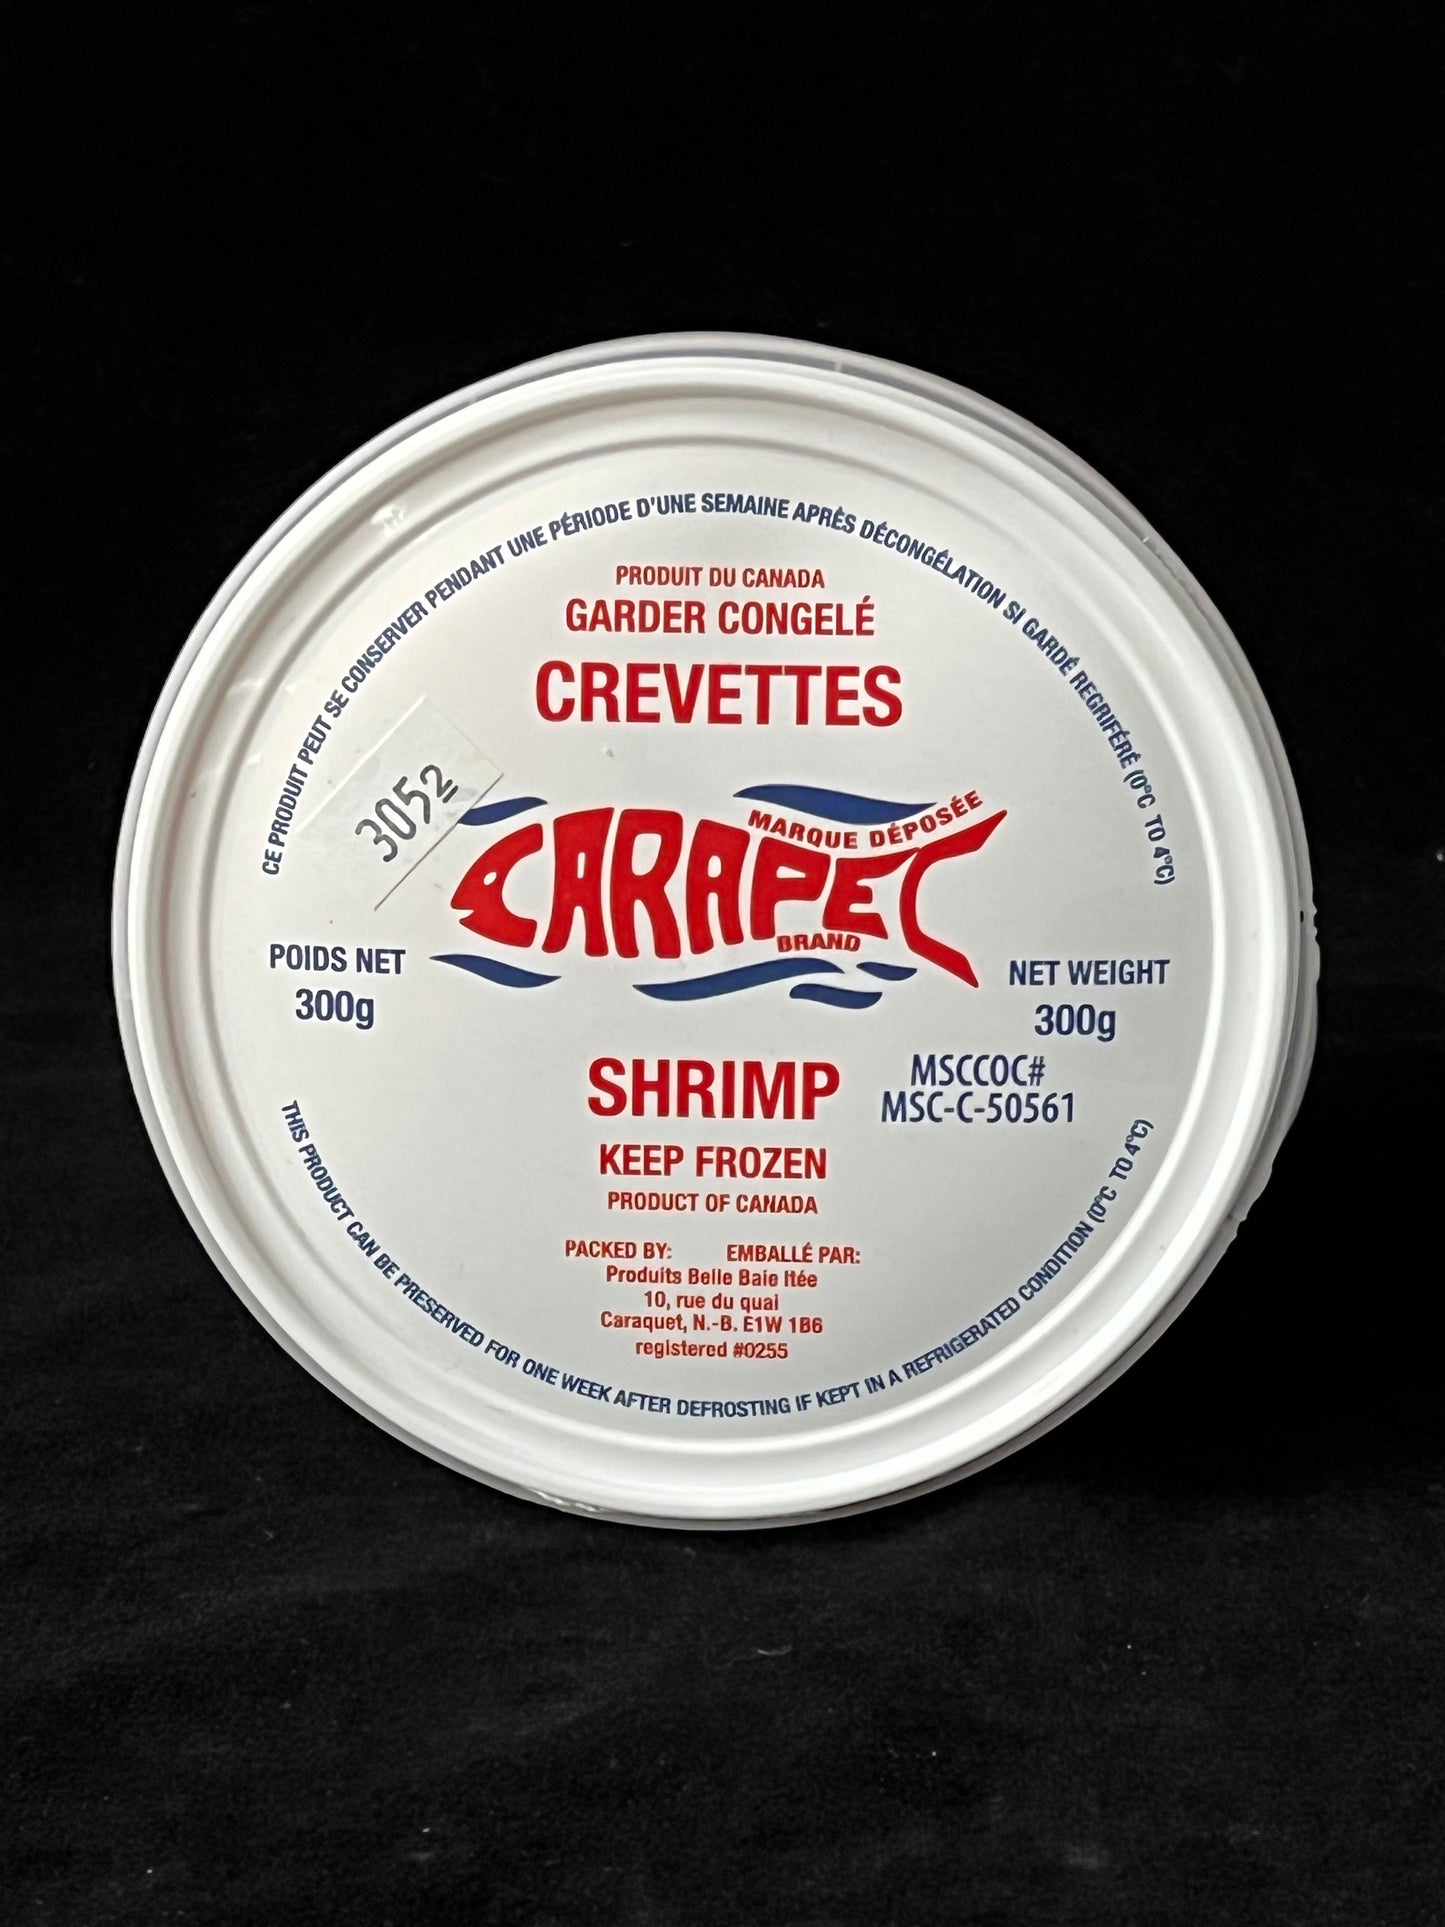 Carapec - Prawns / Shrimp - 300g 